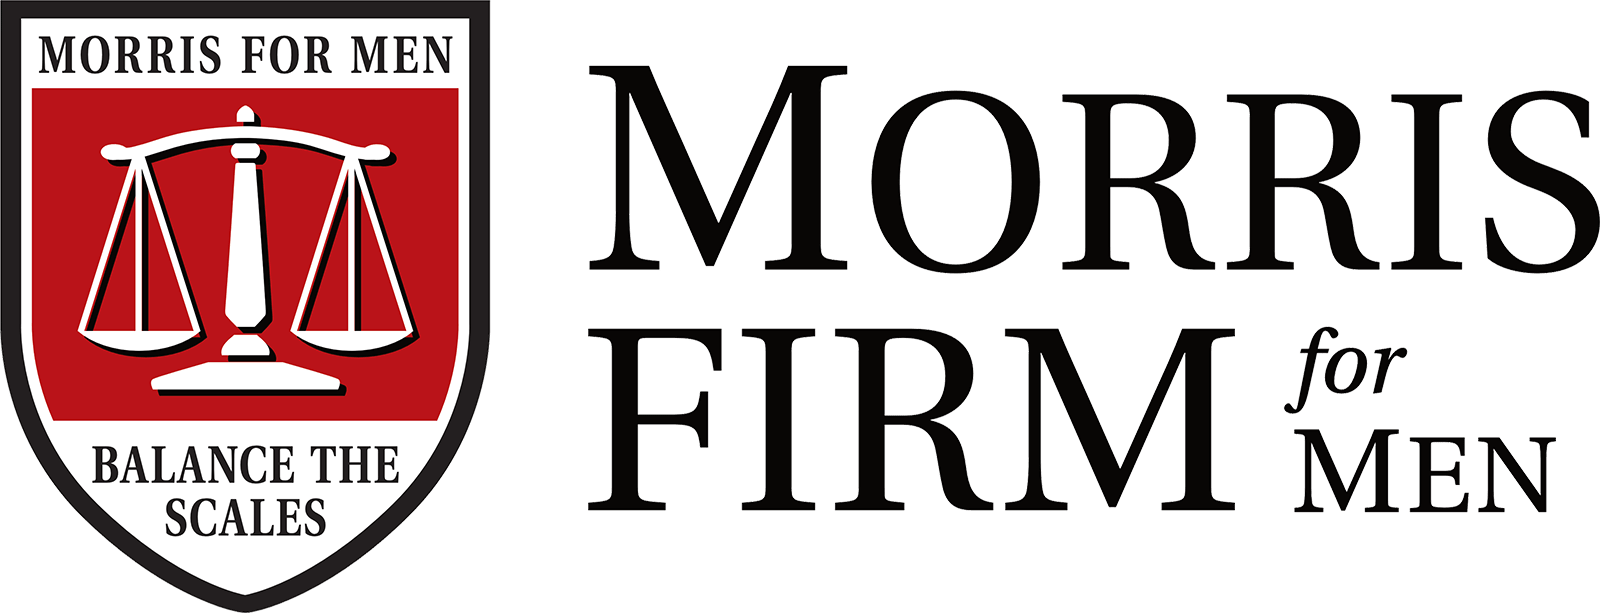 Morris Firm For Men